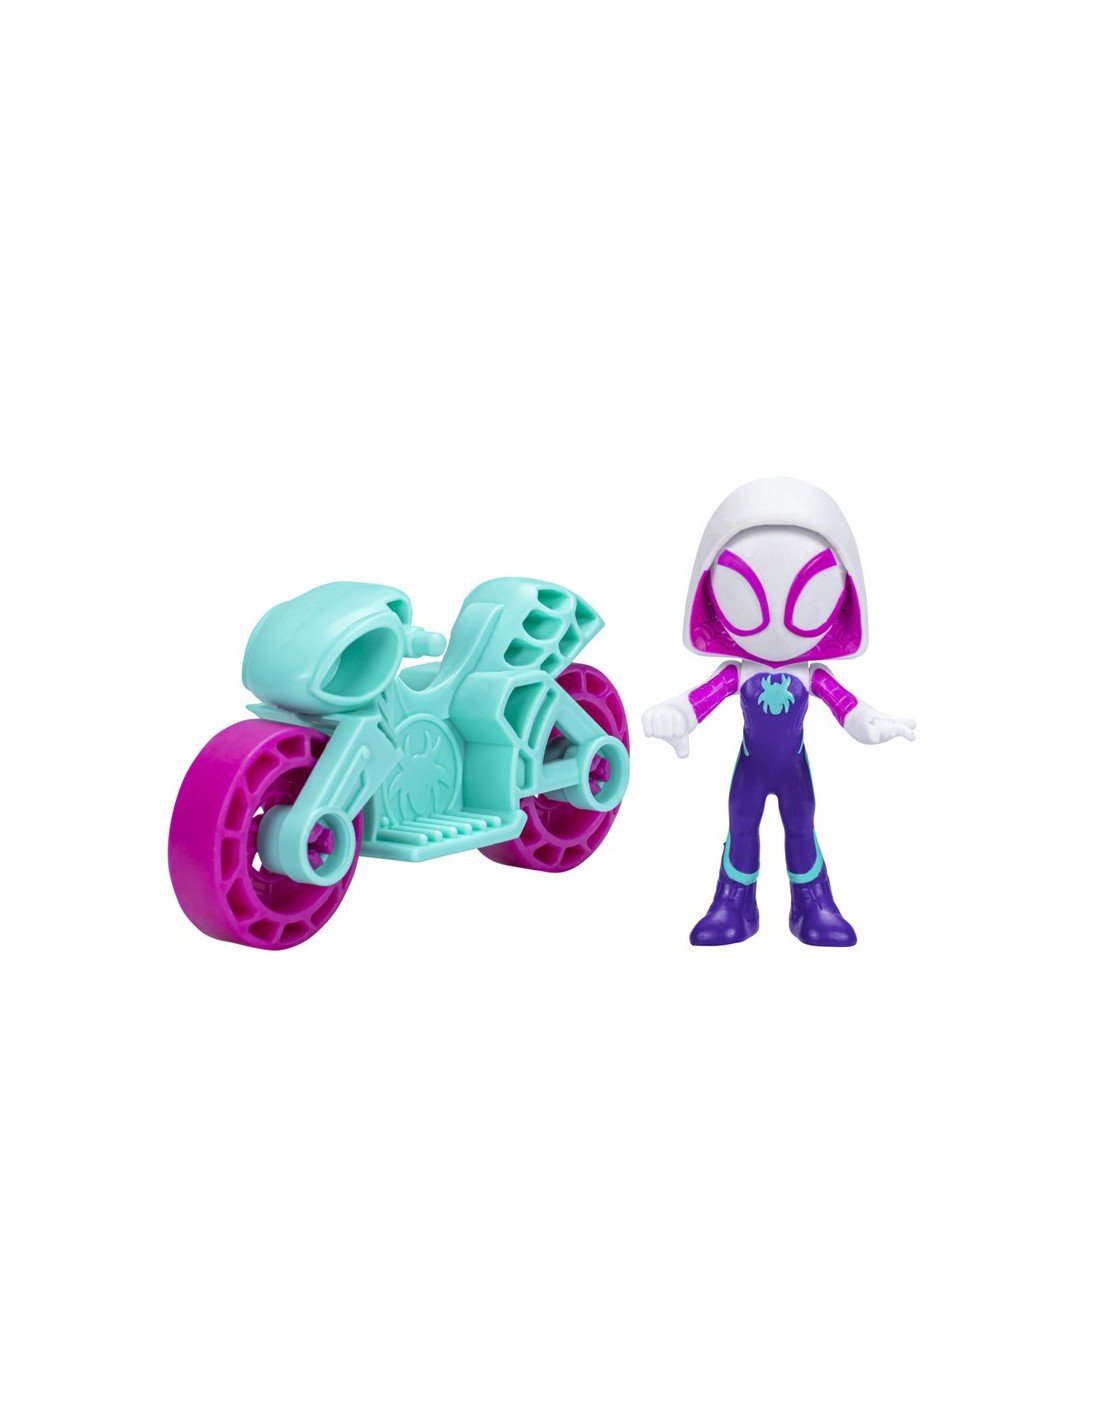 Spidey and His Amazing Friends Marvel Spidey and His Amazing Friends Miles  Morales: Figura de Spider-Man, figura de acción de 9 pulgadas, juguetes